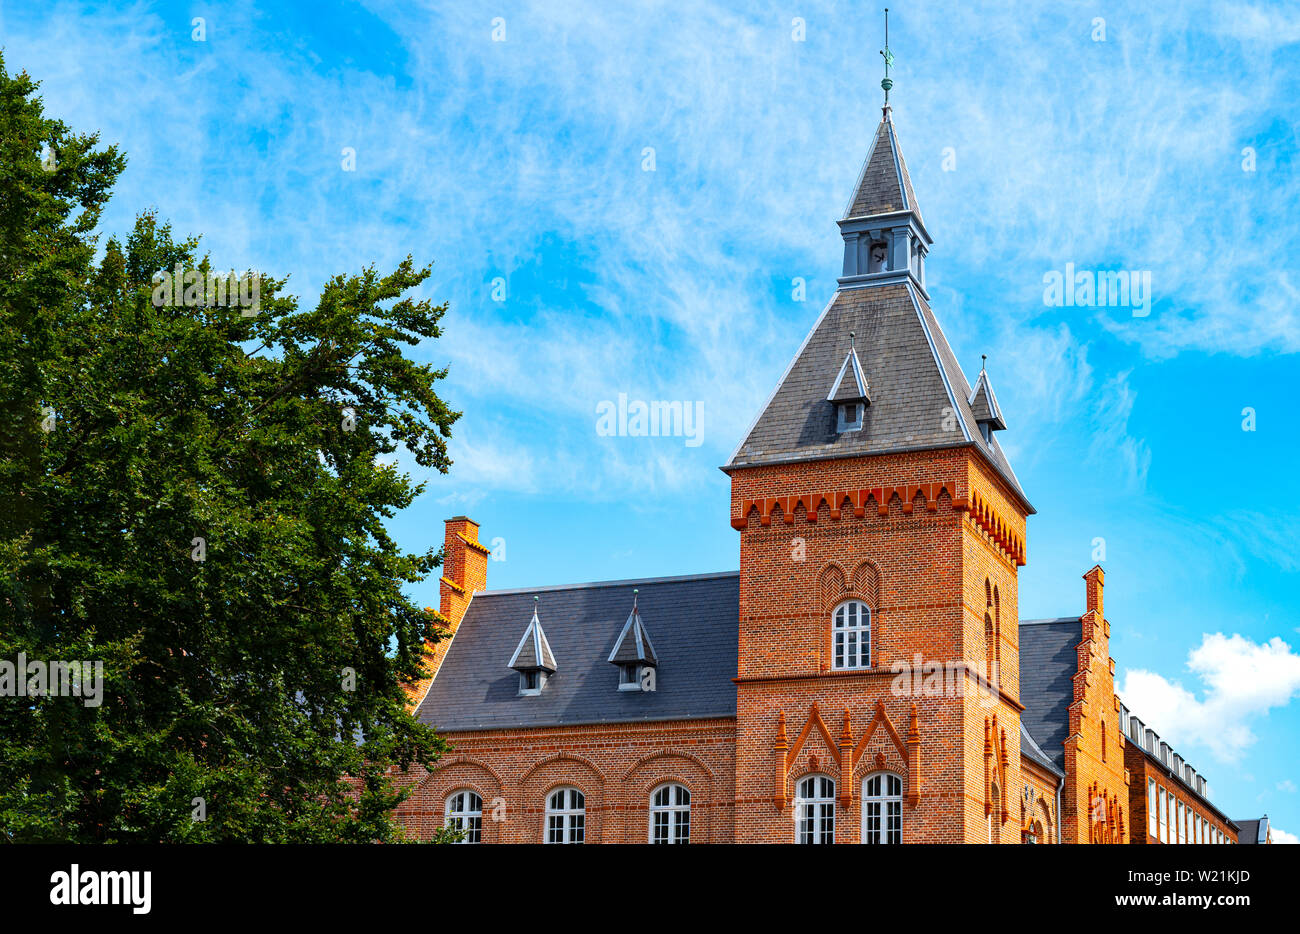 Denmark, Jutland peninsula, Esbjerg, Torvet square,  the tower of the old Town Hall Stock Photo